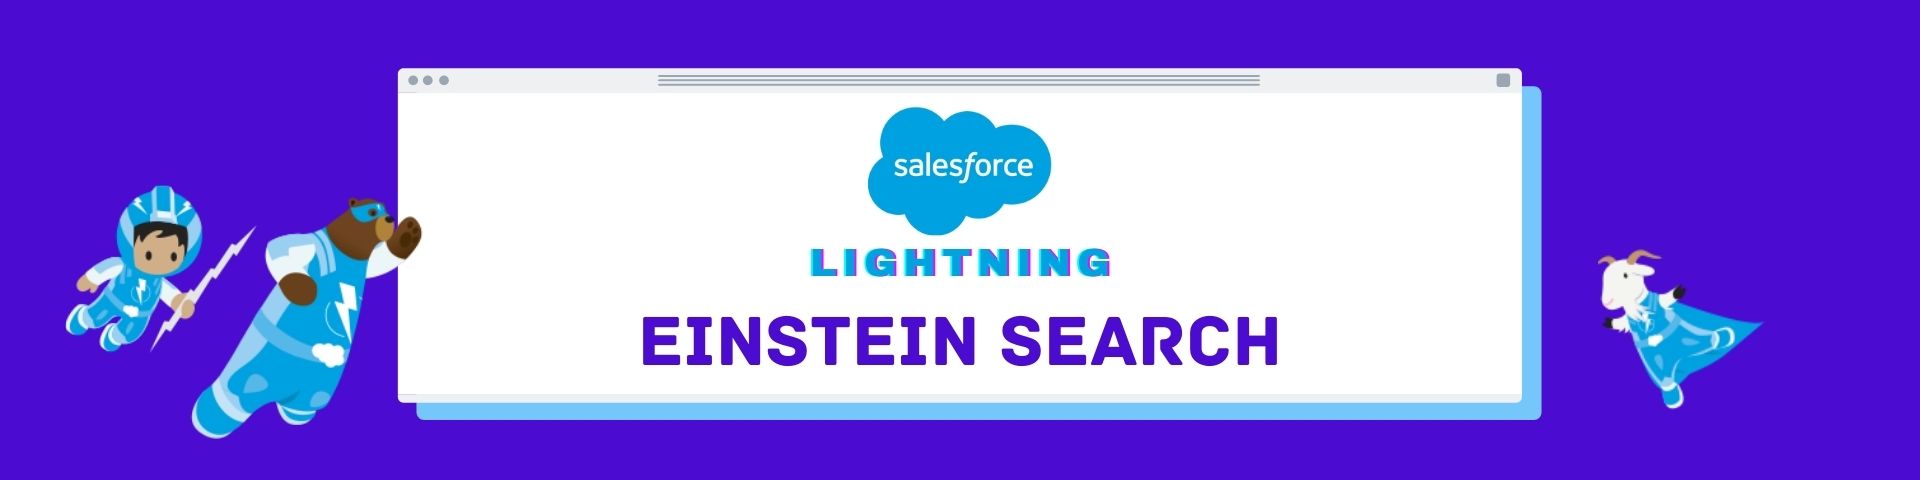 Salesforce Lightning Einstein search